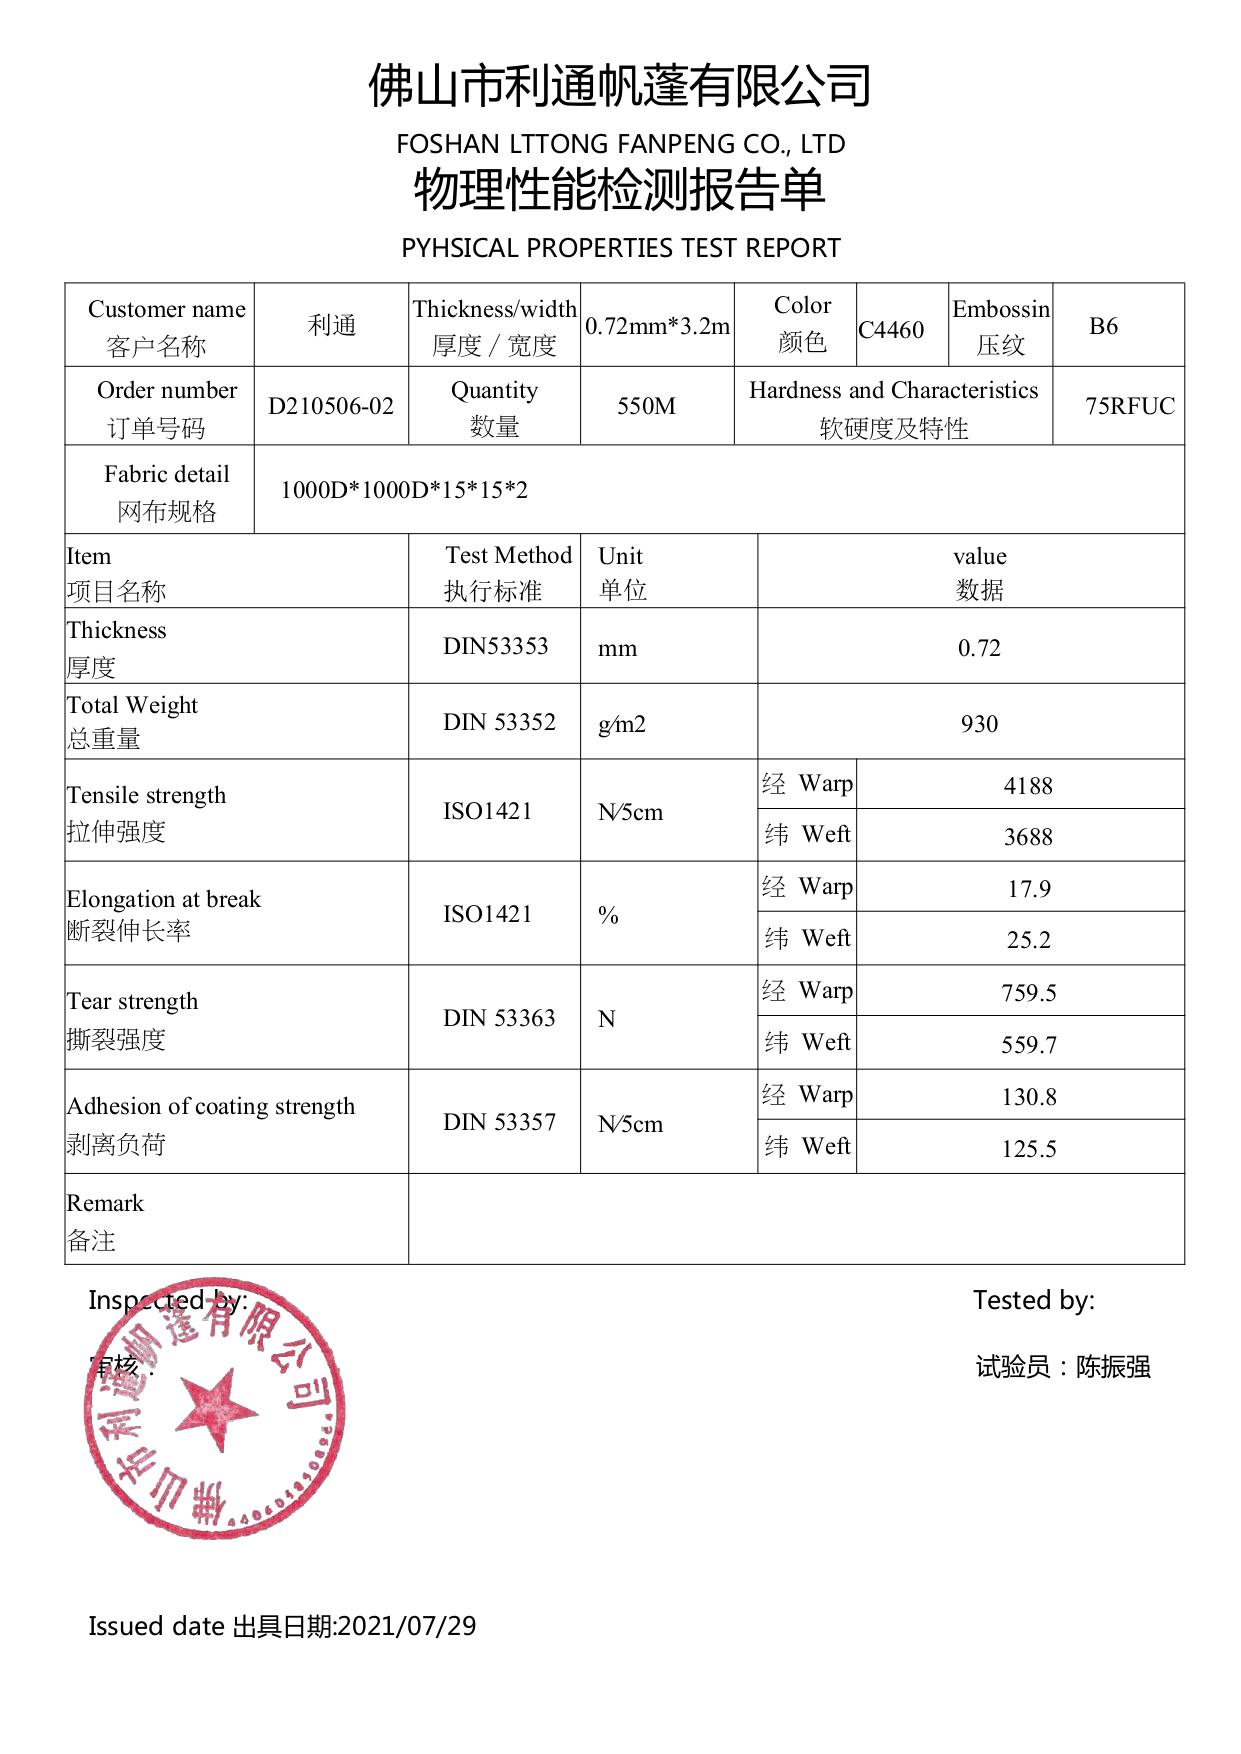 Data sheet for 0.72mm